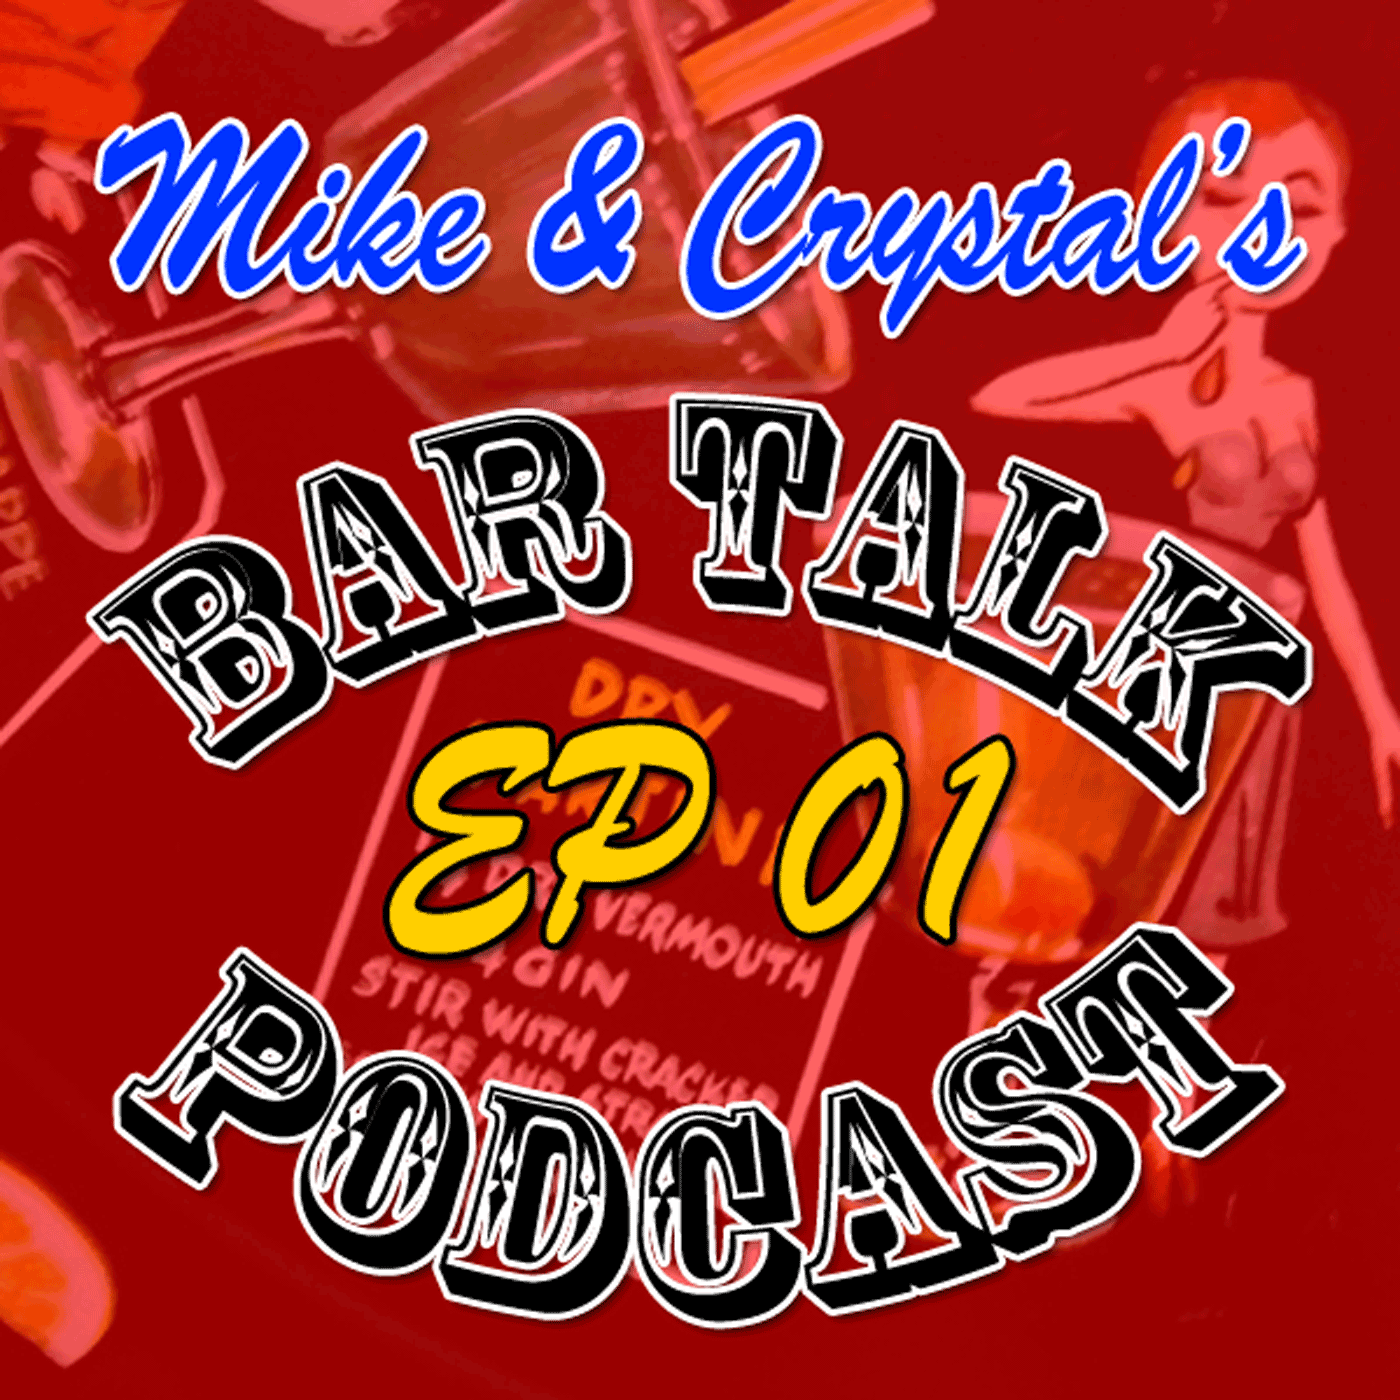 Mike & Crystal's bar talk podcast